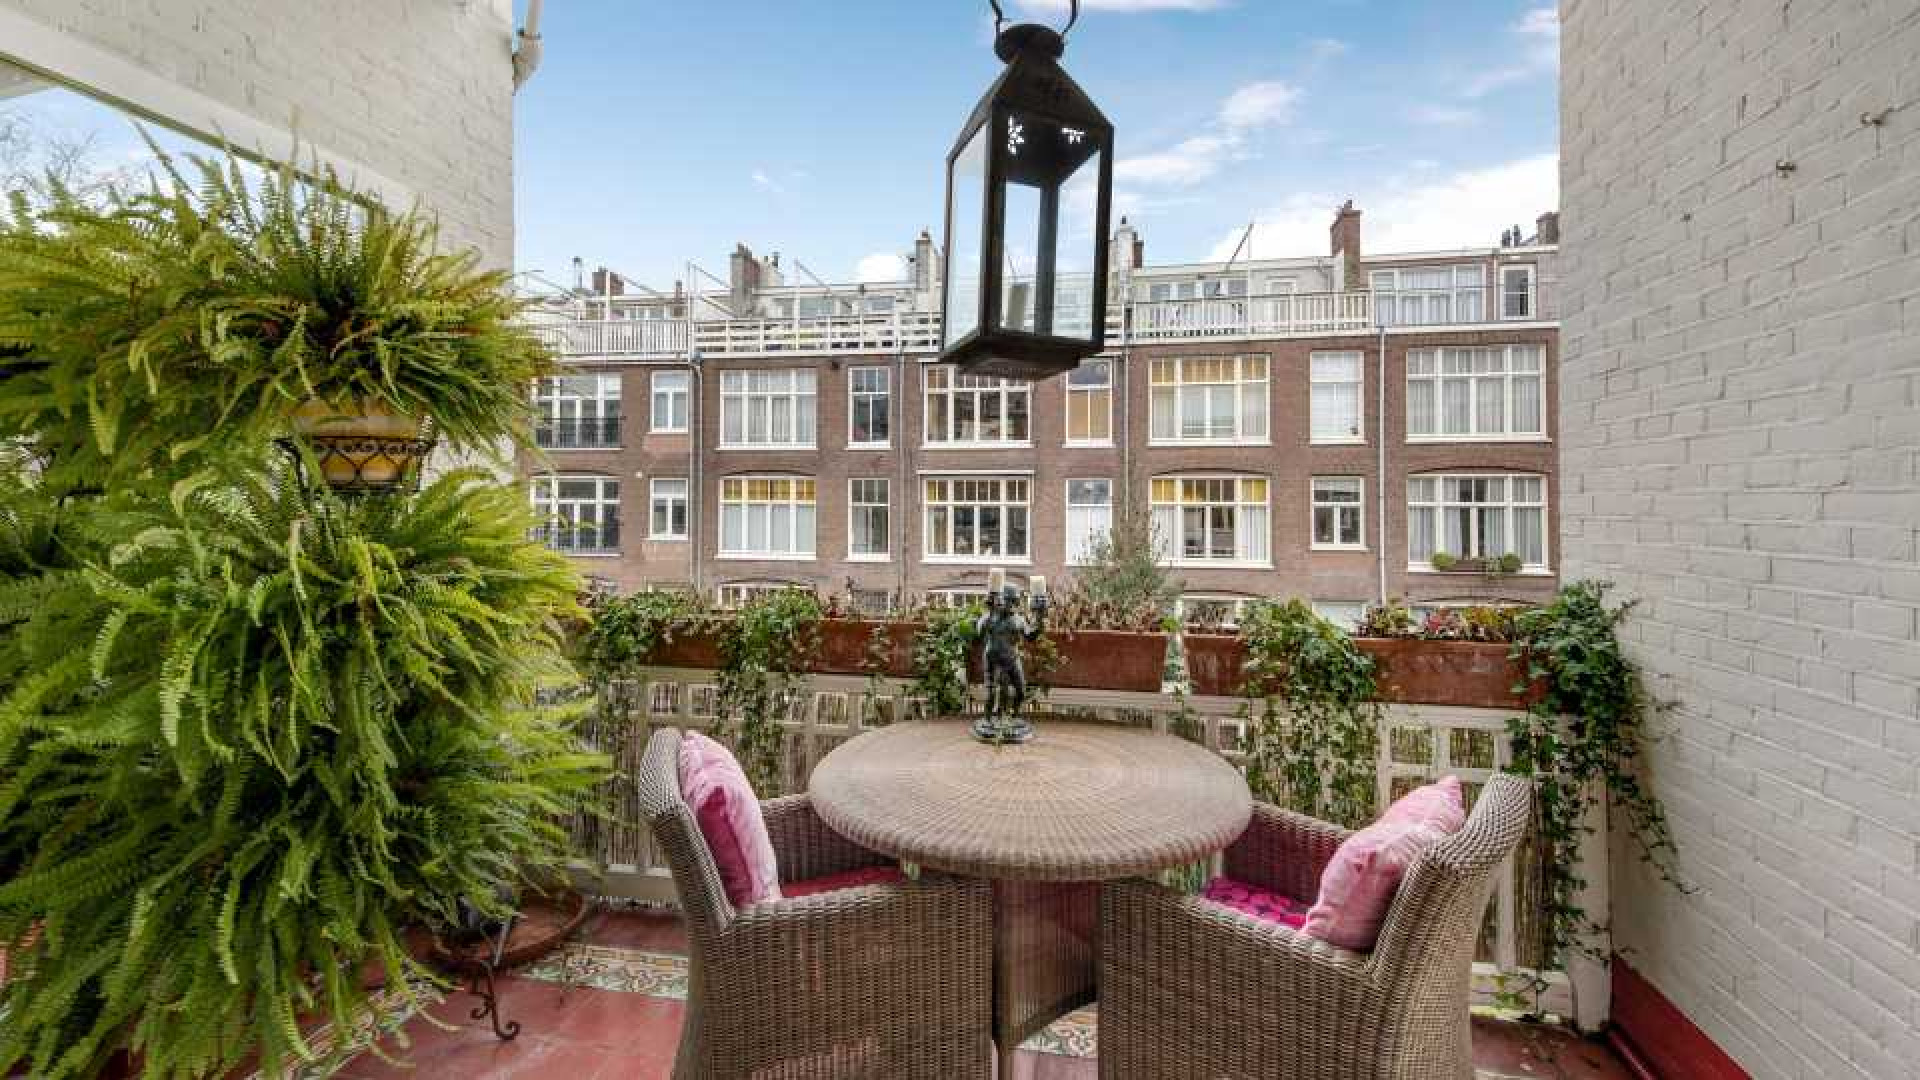 Mode koningin Sheila de Vries verkoopt haar driedubbele bovenhuis in Amsterdam Zuid met vette winst. Zie foto's 4